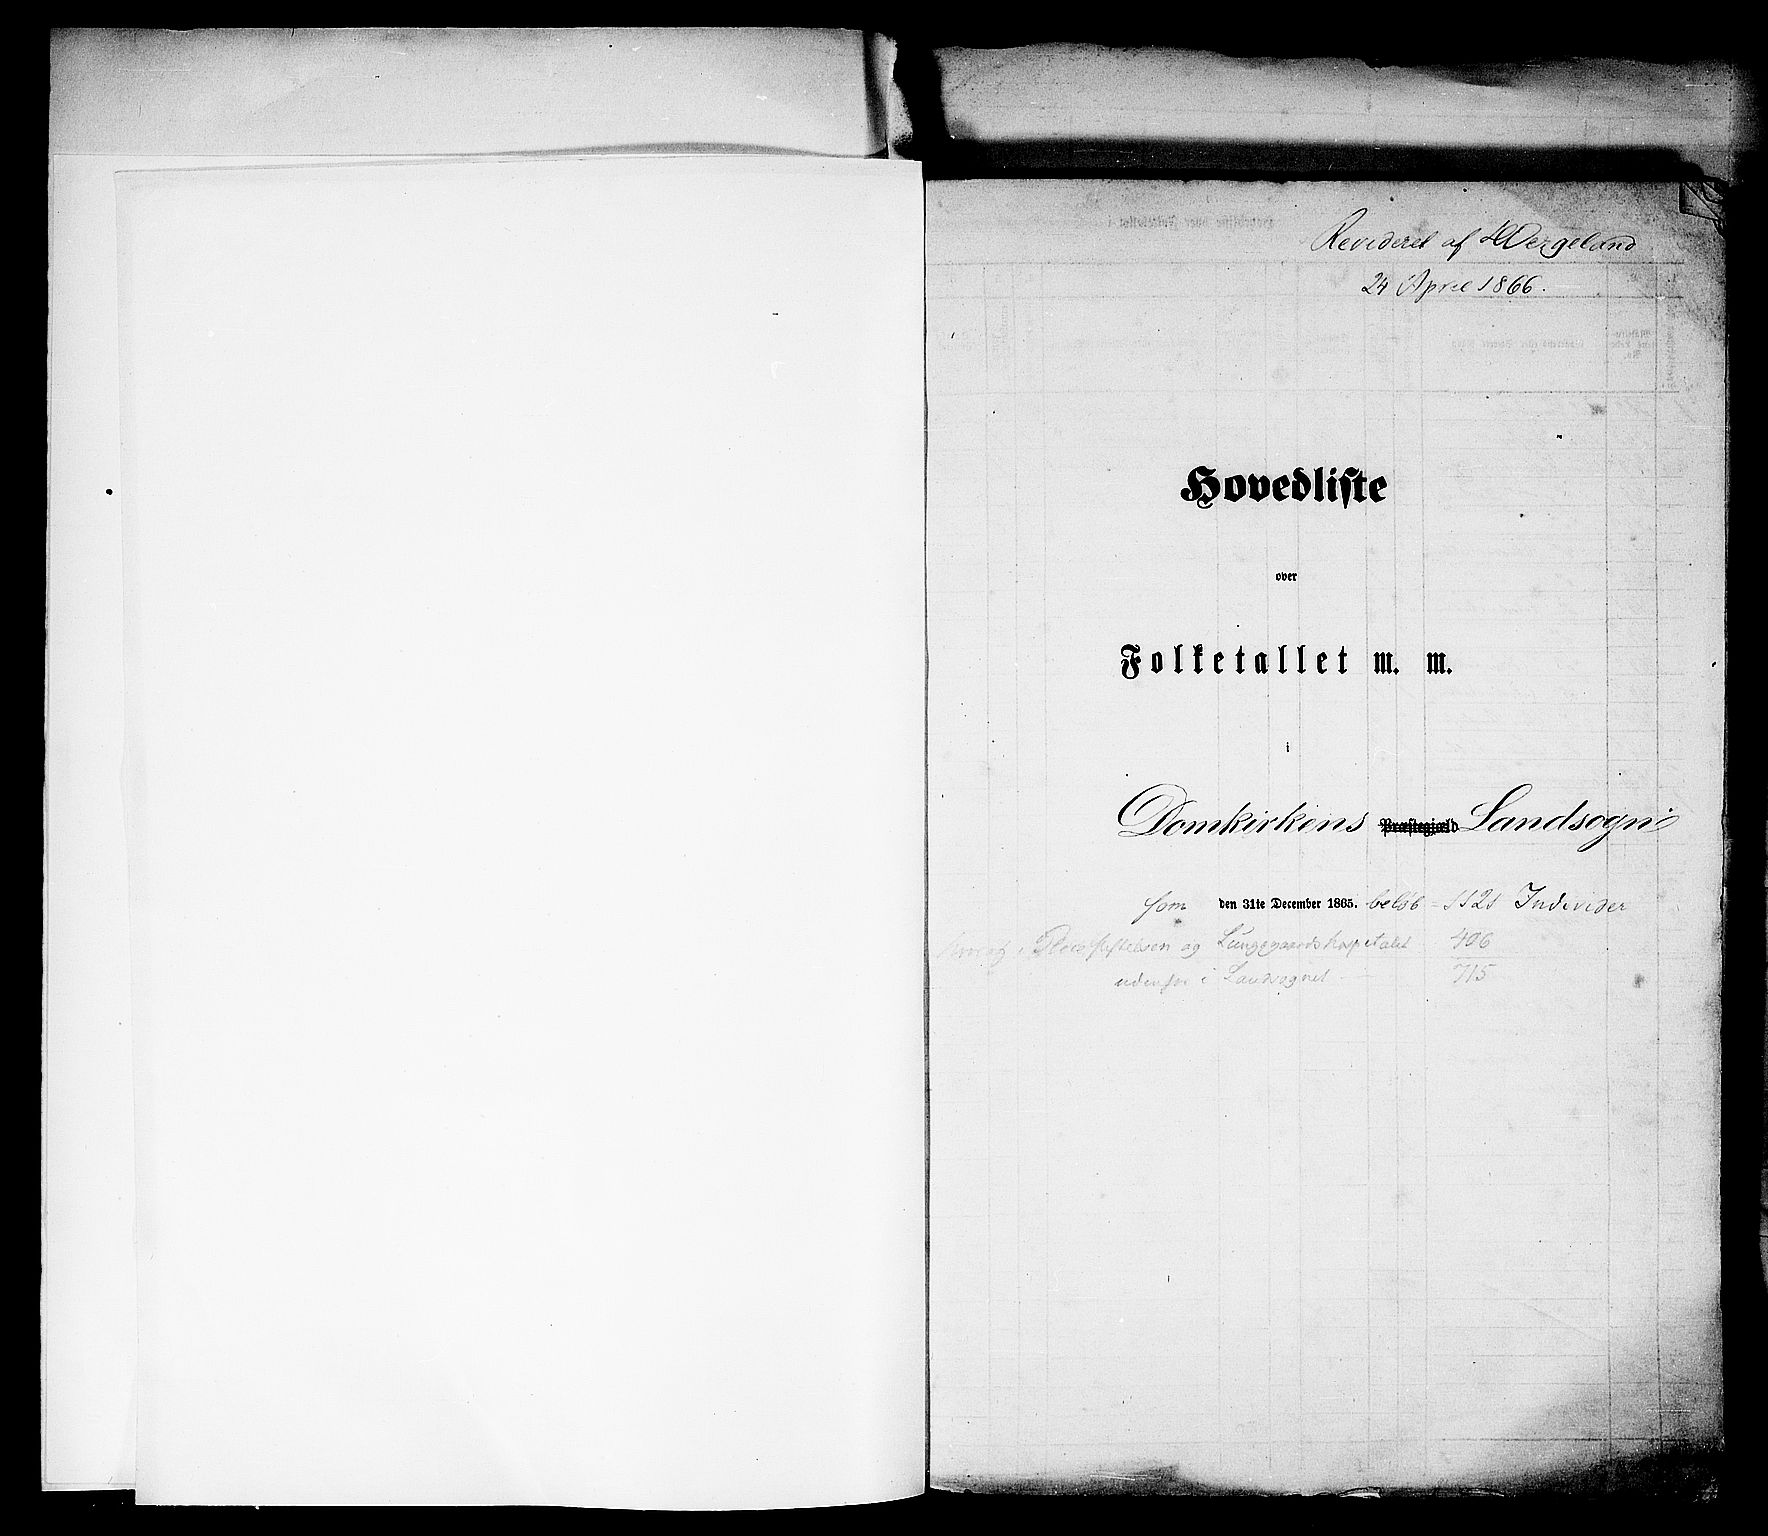 RA, Folketelling 1865 for 1281L Bergen Landdistrikt, Domkirkens landsokn og Korskirkens landsokn, 1865, s. 3